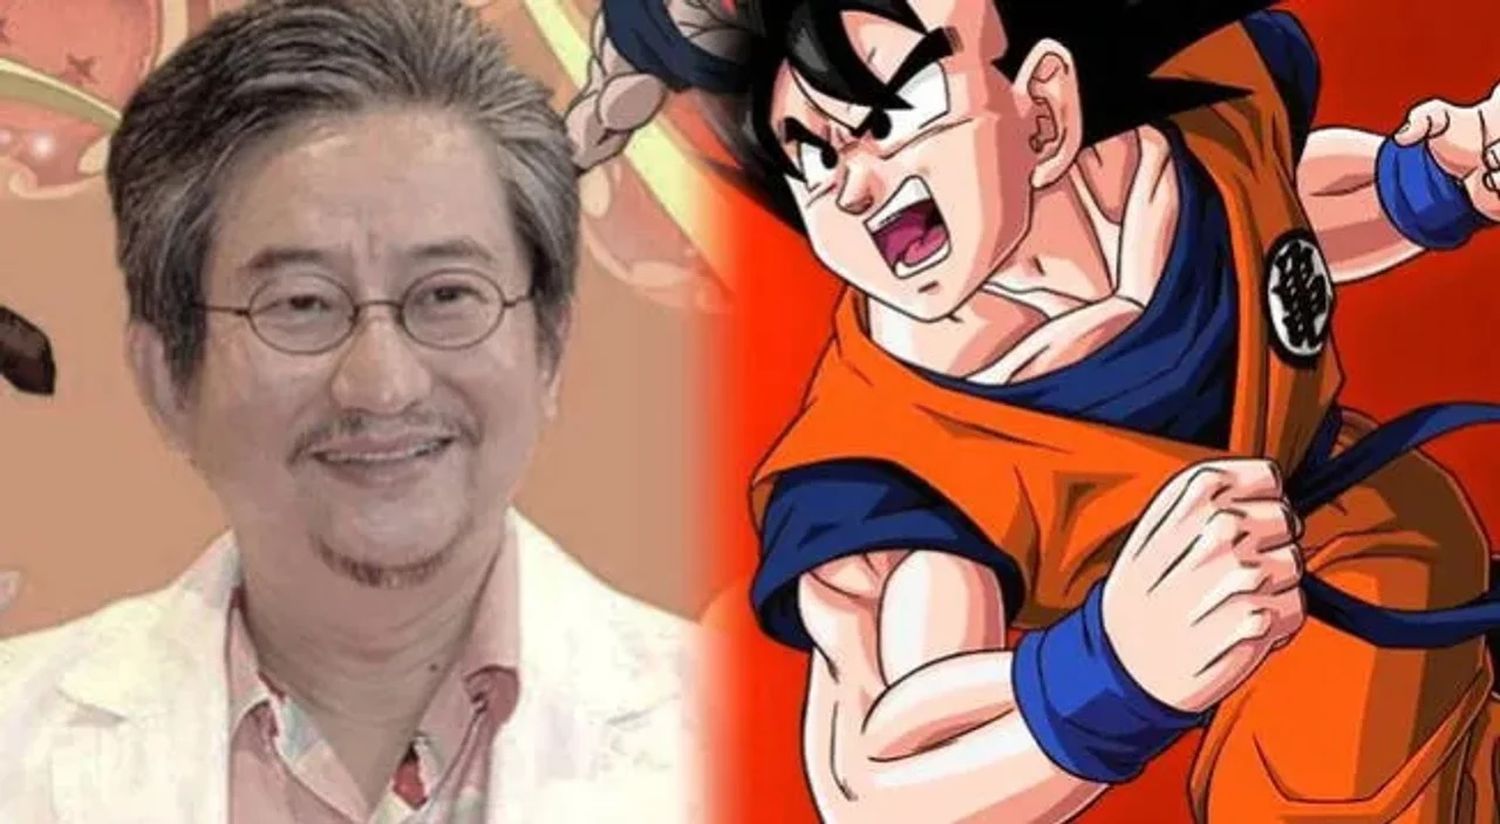 El creador japonés de cómics manga Akira Toriyama, conocido por títulos tan populares como "Dragon Ball" y "Dr. Slump